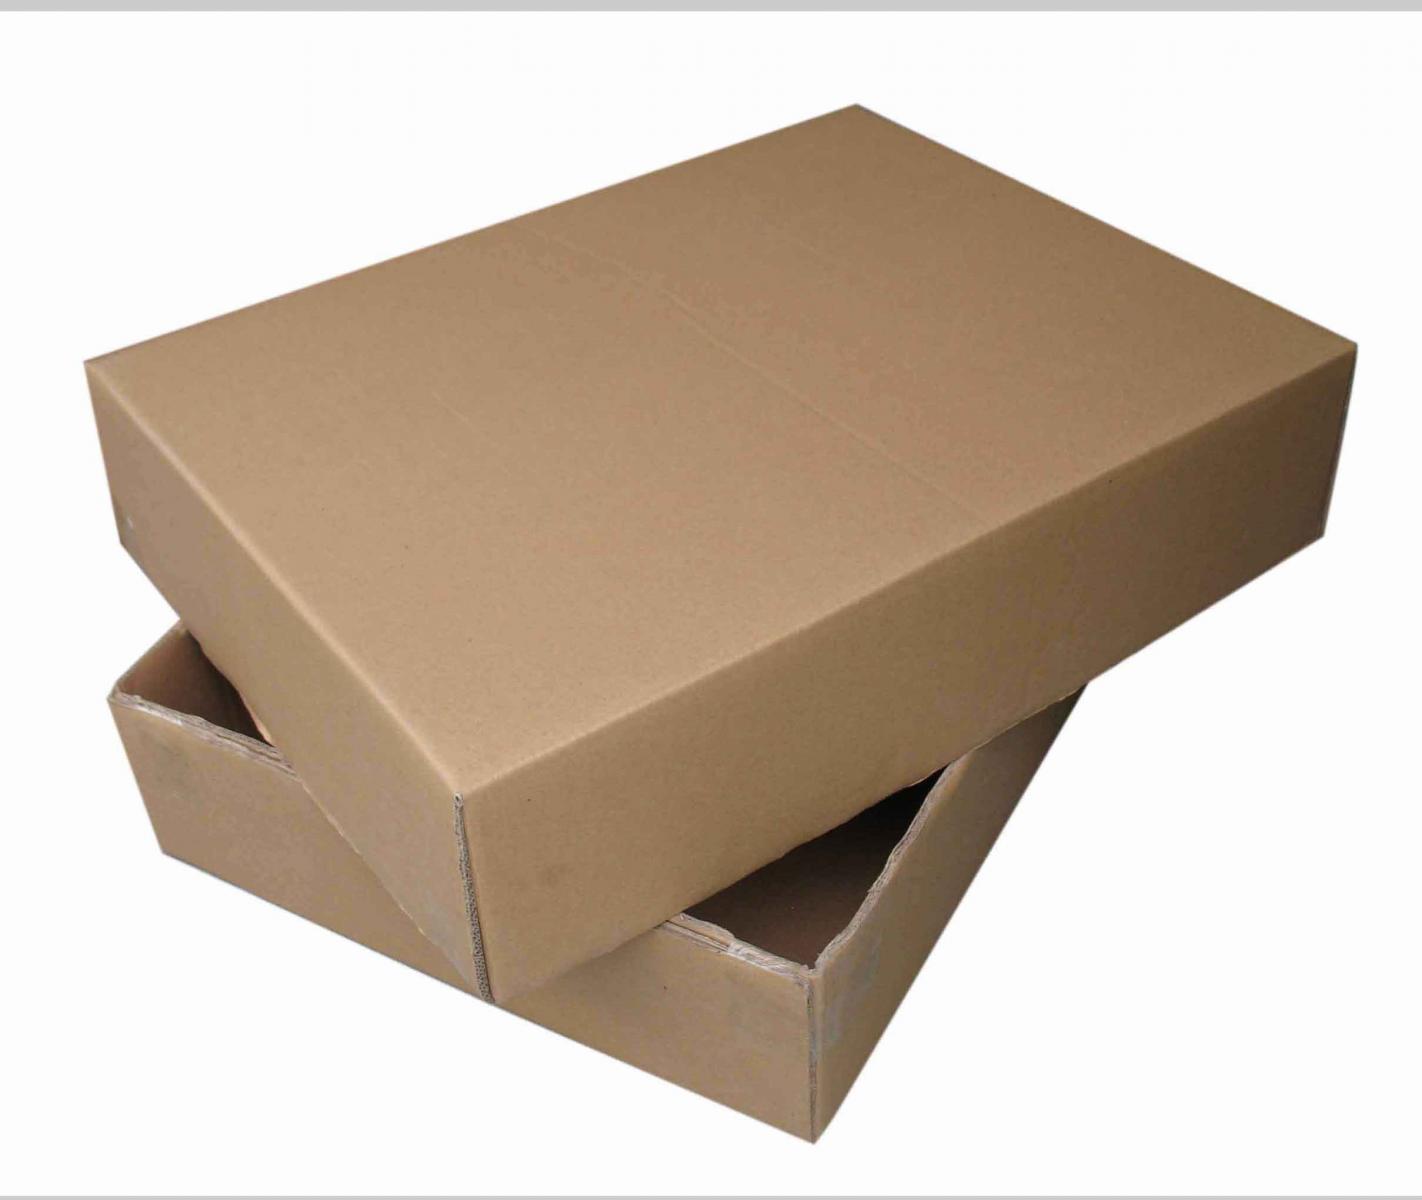 Địa chỉ sản xuất thùng, hộp carton âm dương theo yêu cầu tại TPHCM